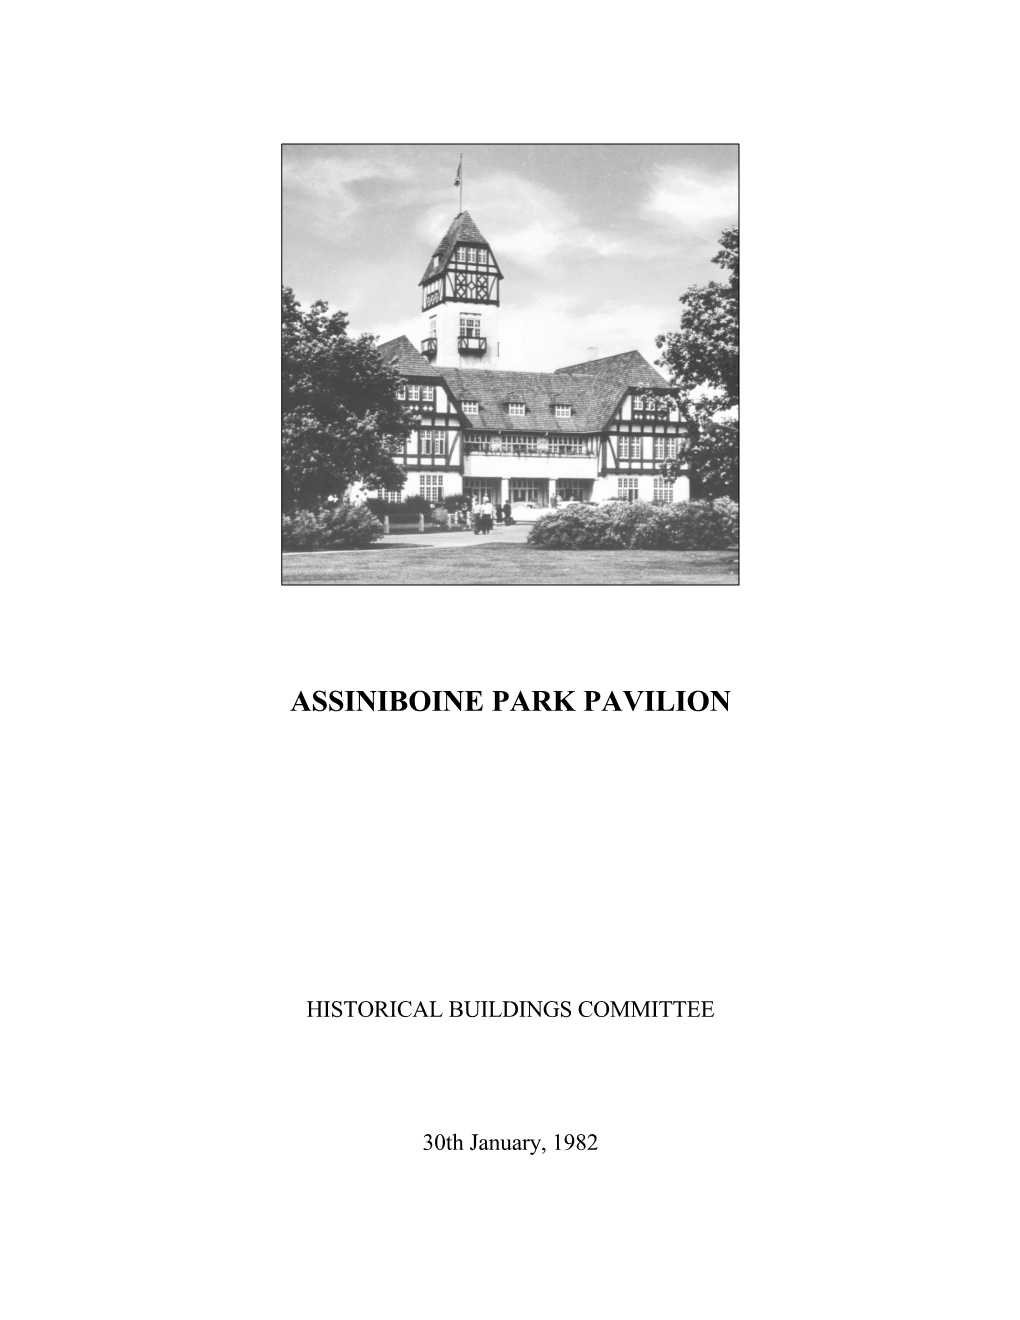 Assiniboine Park Pavilion